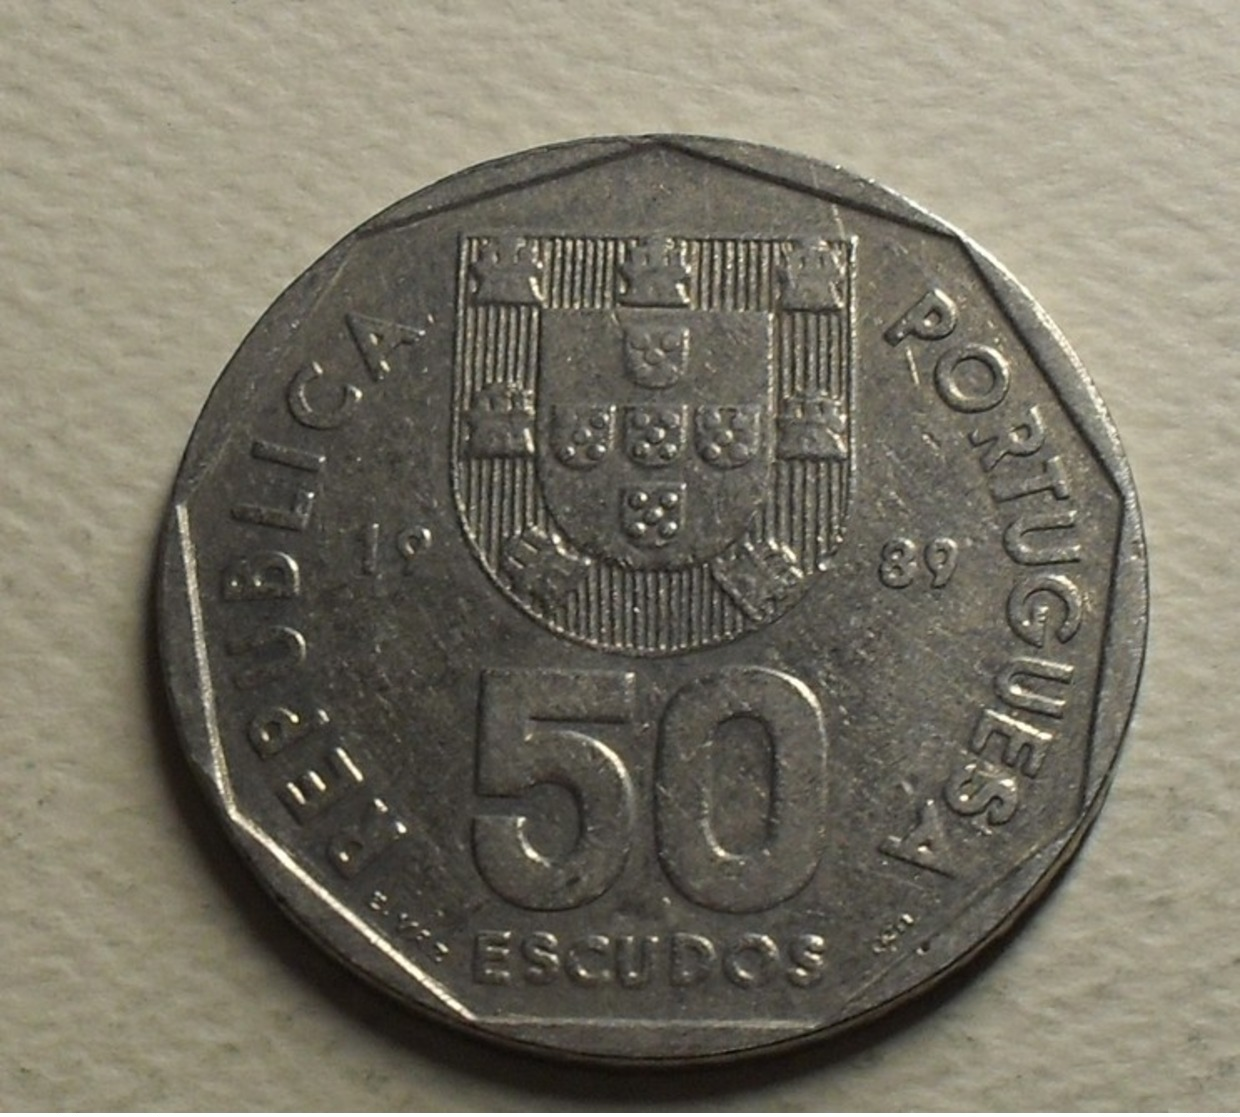 1989 - Portugal - 50 ESCUDOS - KM 636 - Portugal